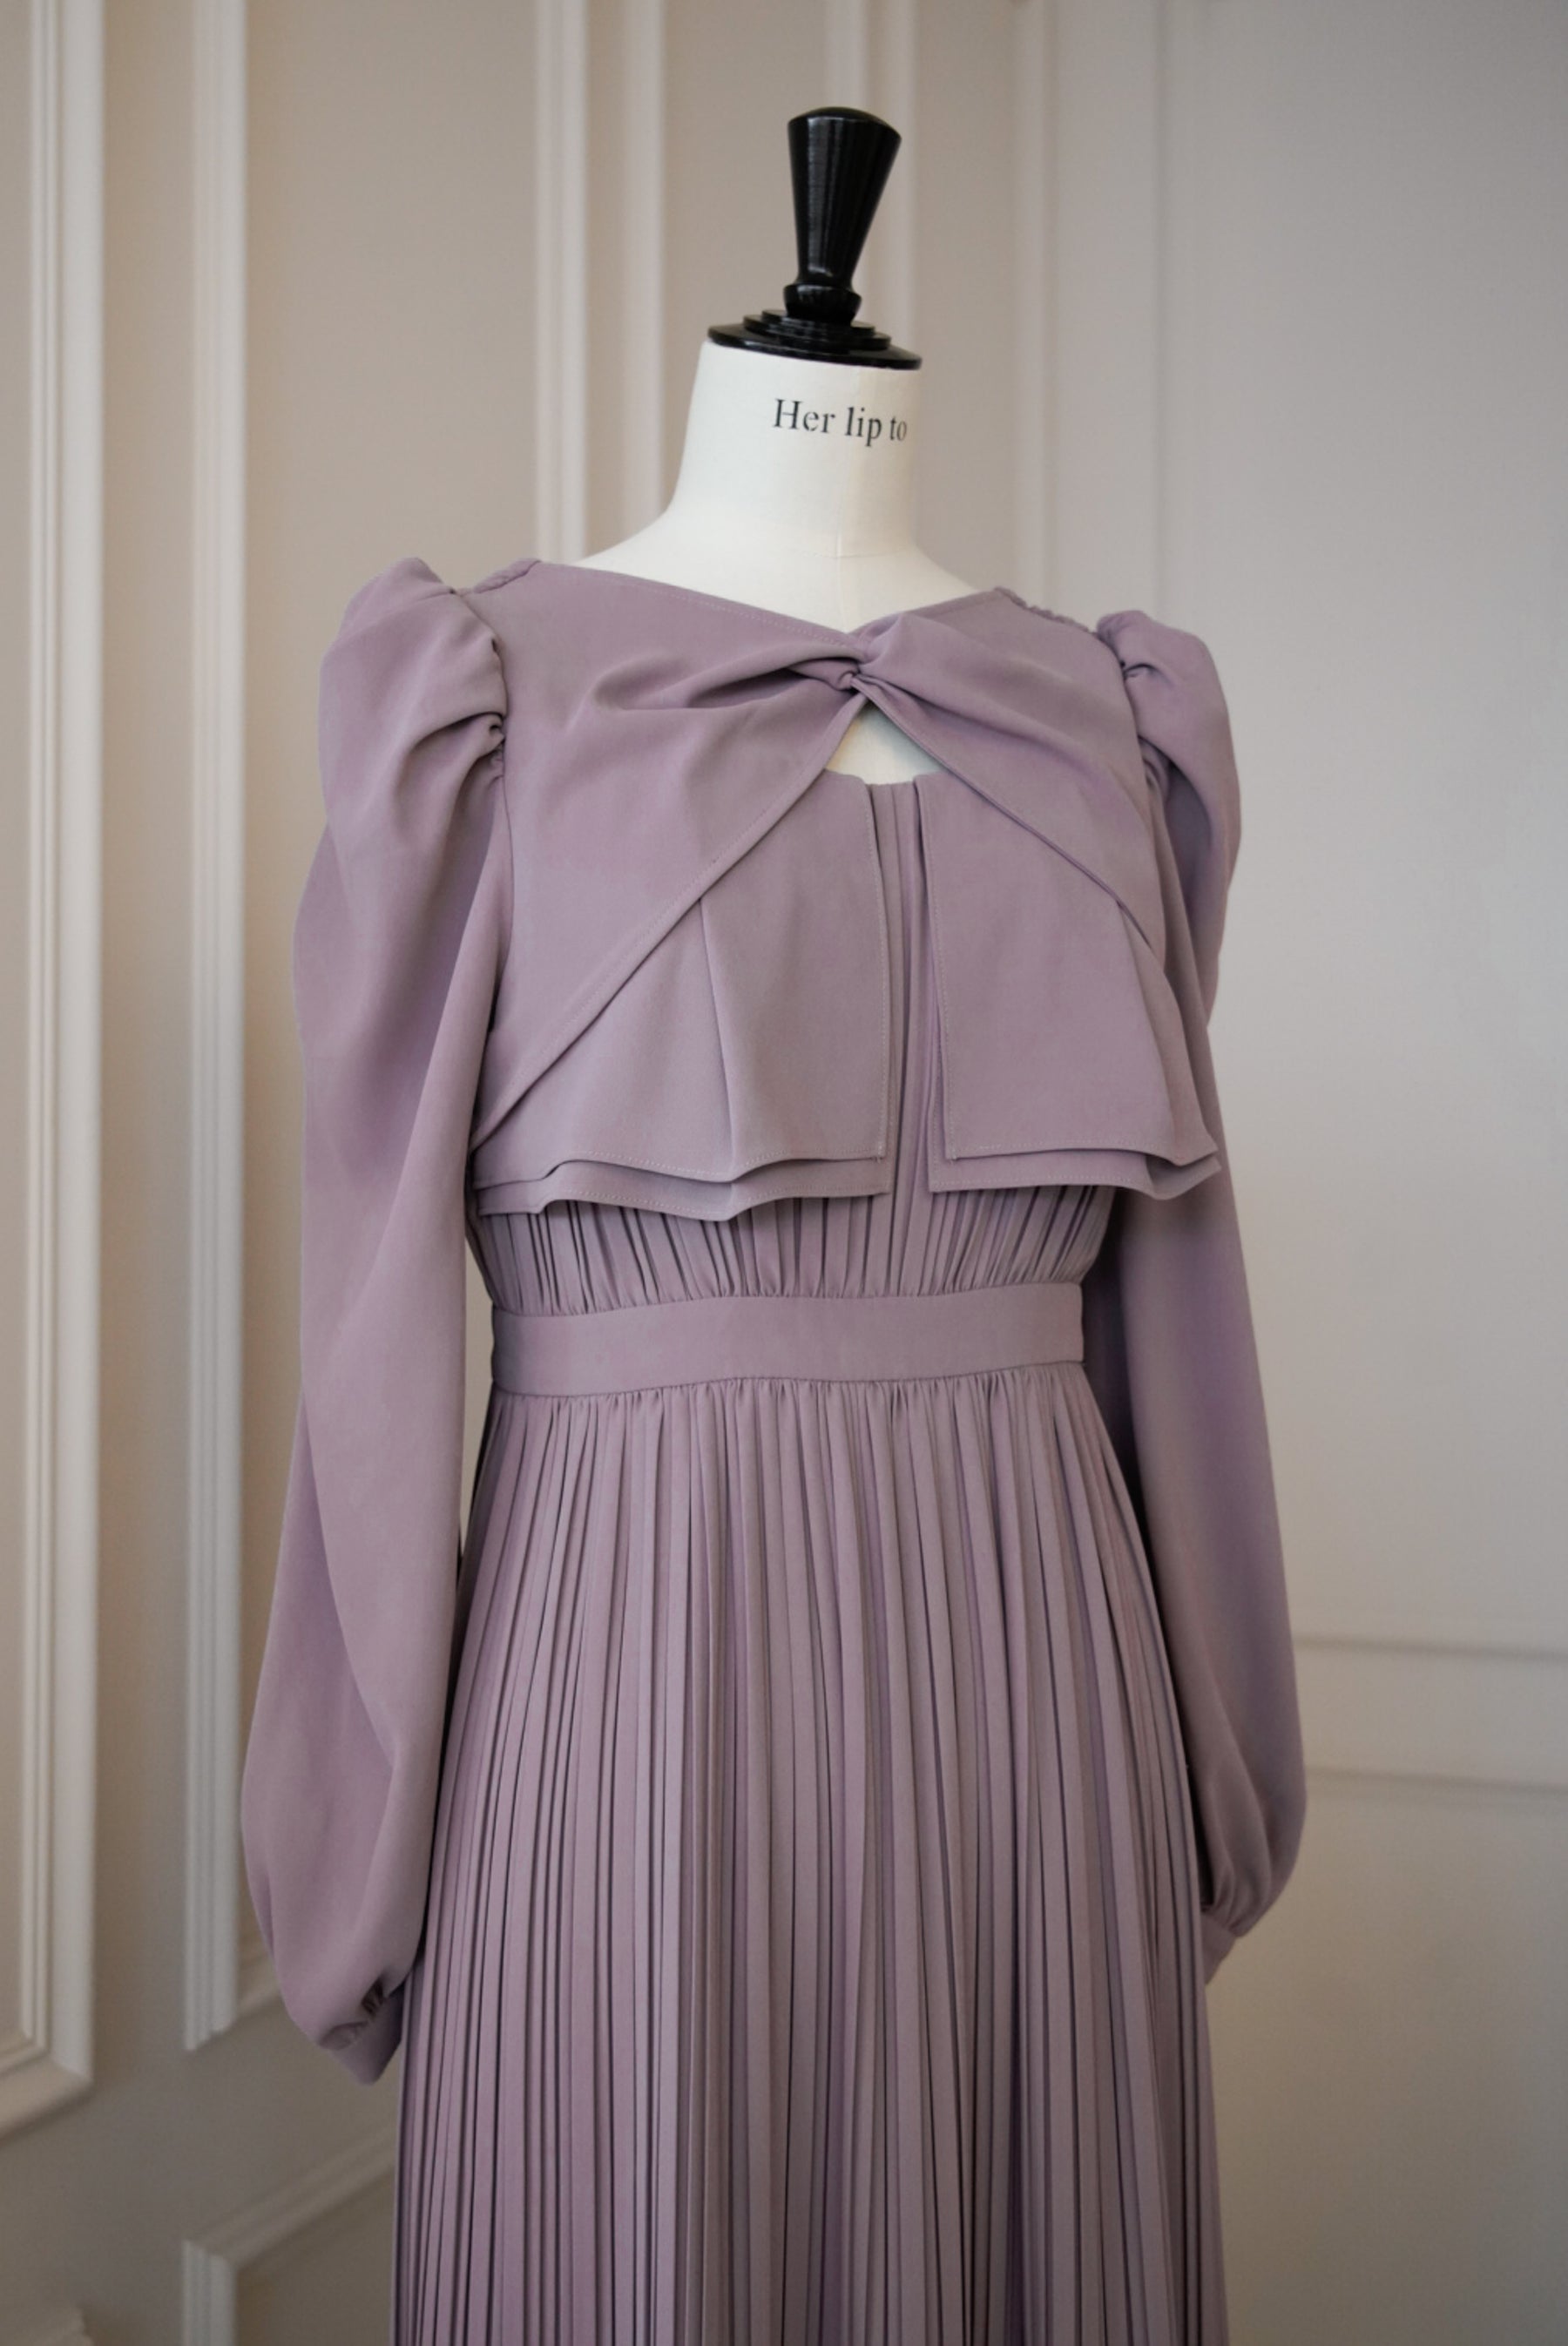 超大特価 La Rochelle Pleated Dress herlipto ad-naturam.fr